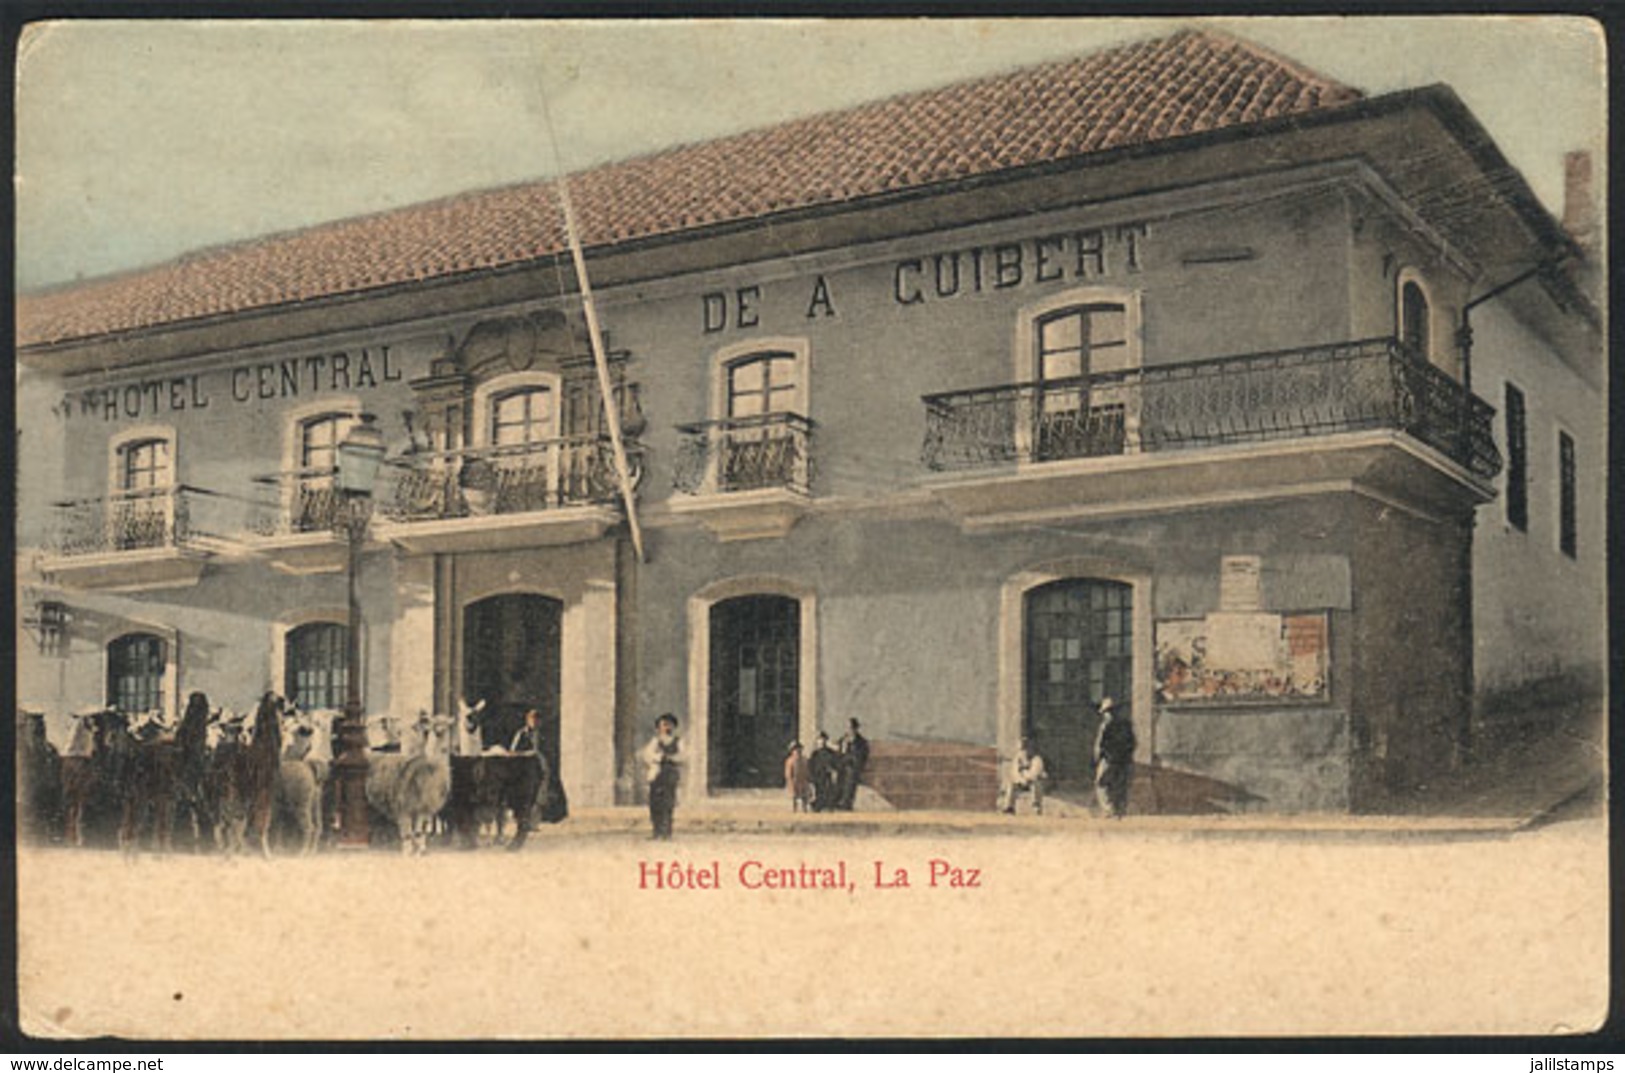 699 BOLIVIA: Hotel Central Of A.Cuibert, La Paz, Circa 1905, VF Quality! - Bolivia